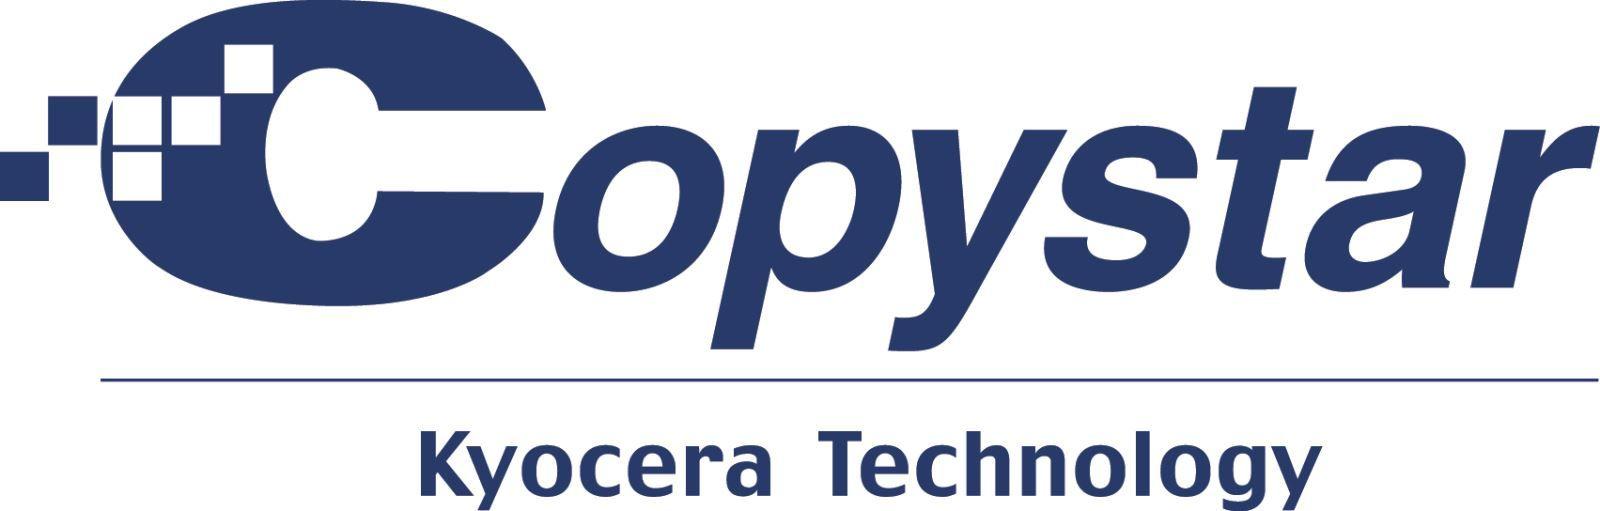 Copystar Logo - Find Your Next Top Performer, Copystar! Financial